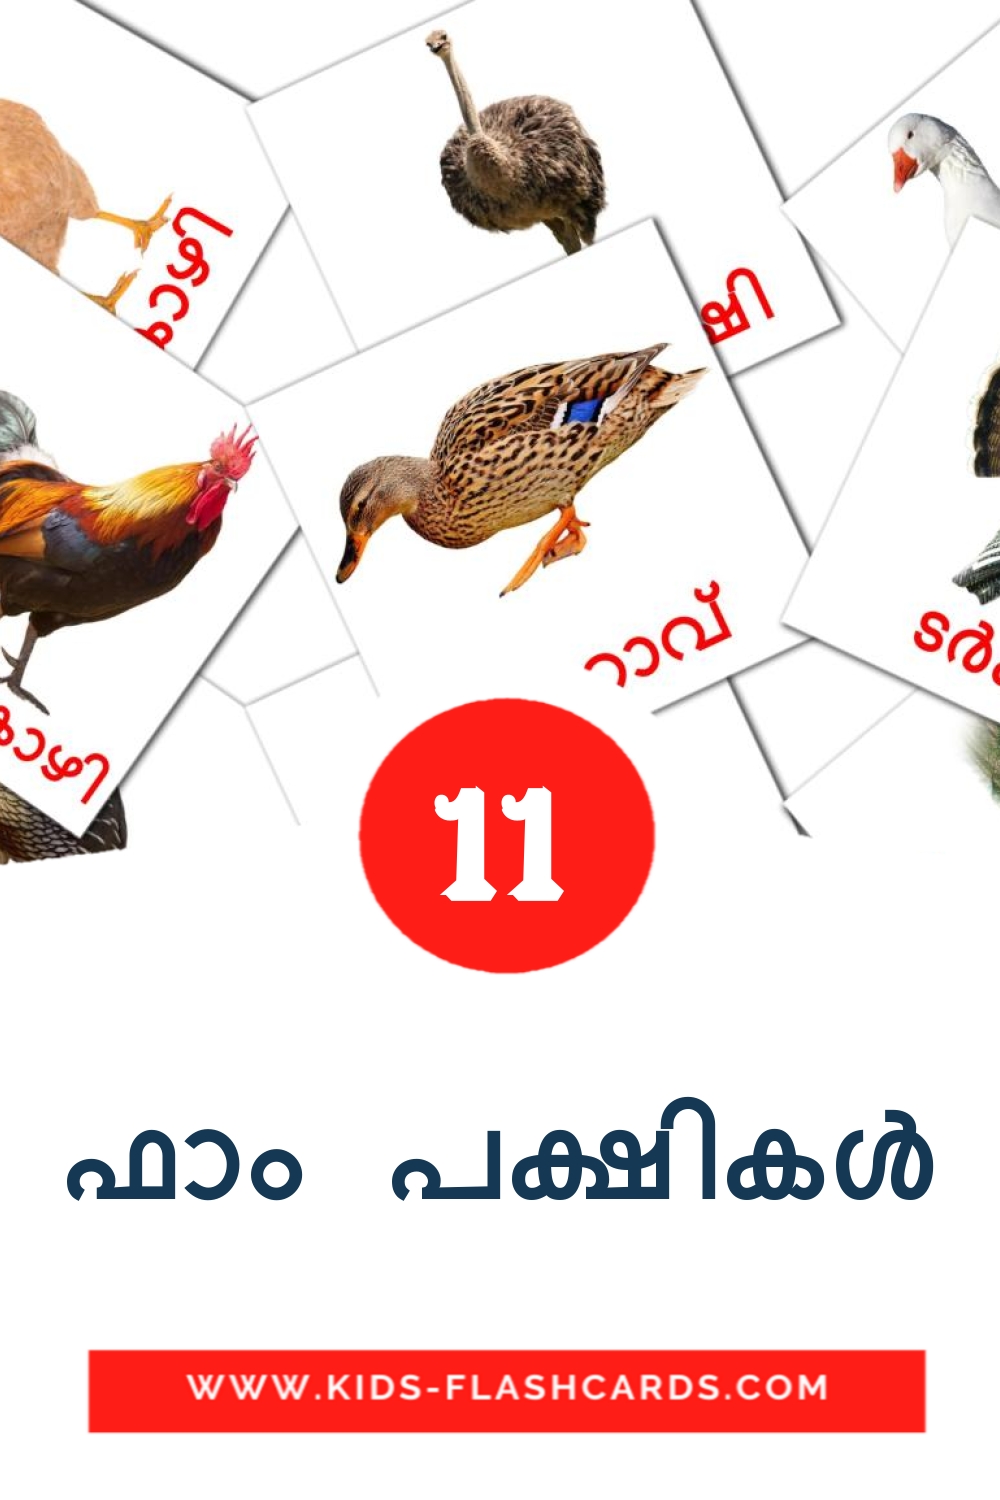 11 ഫാം പക്ഷികൾ fotokaarten voor kleuters in het malayalam